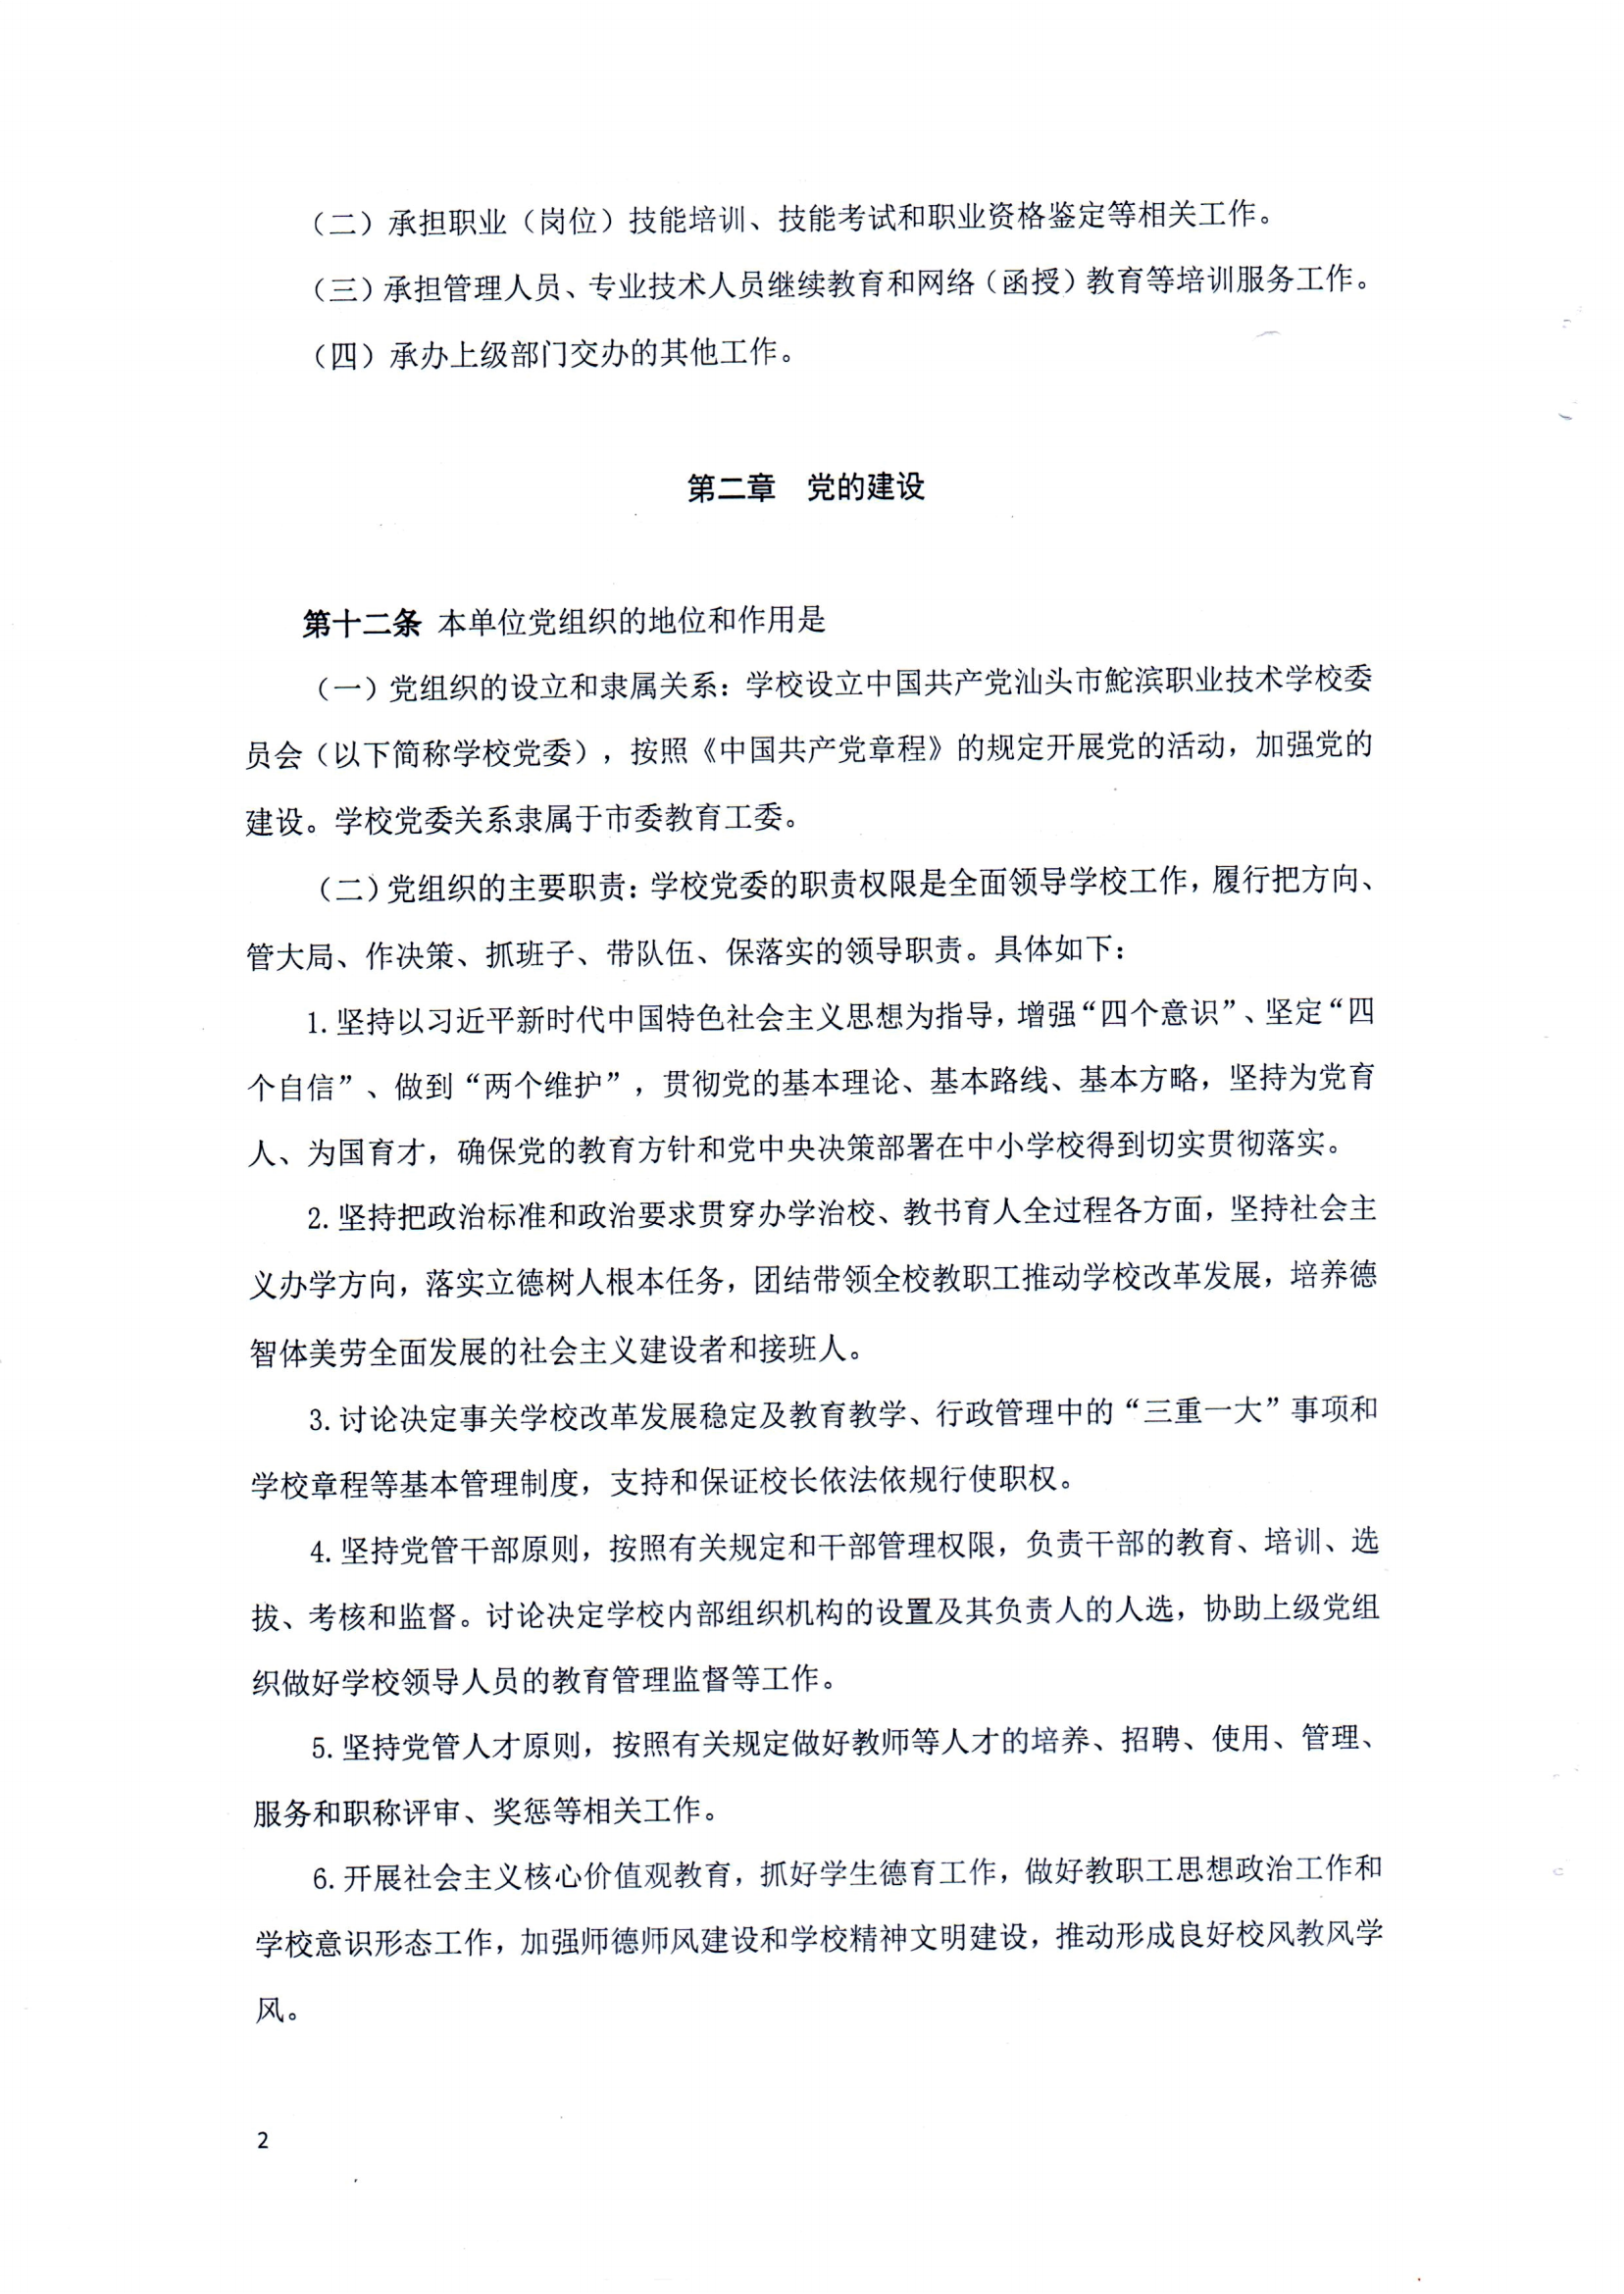 （中国）有限公司官网章程（修正案）_01.png